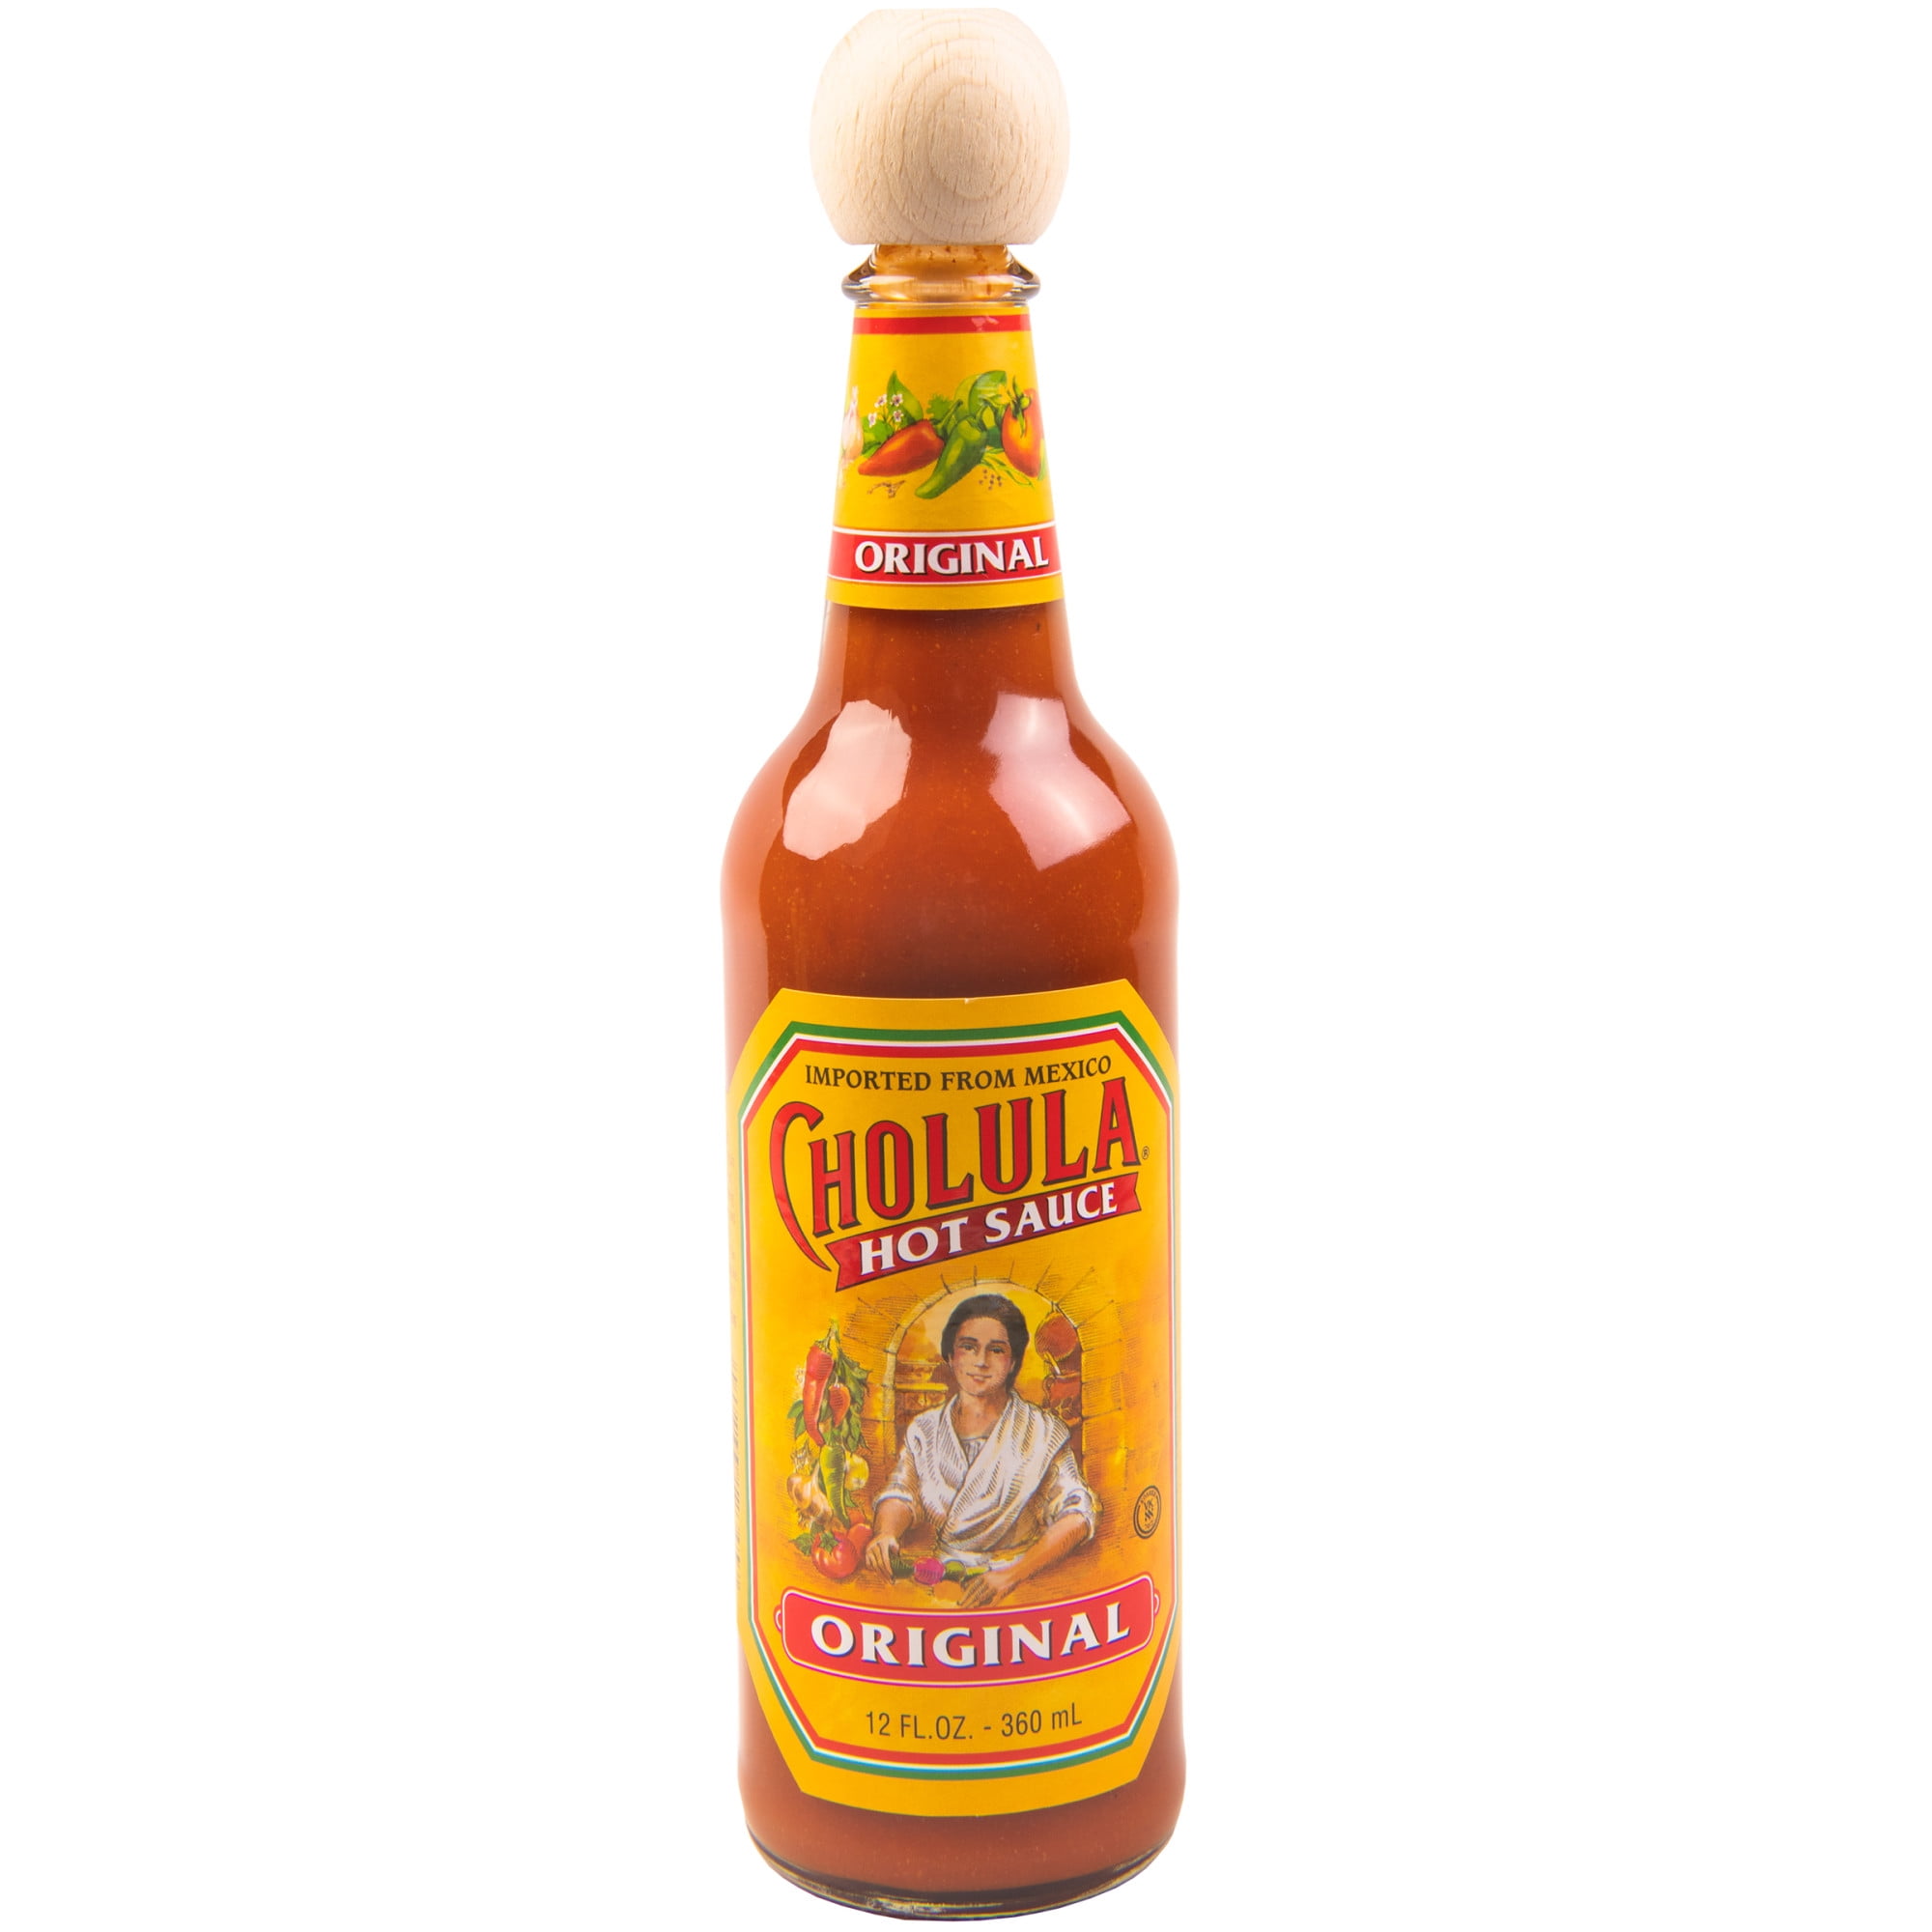 cholula hot sauce